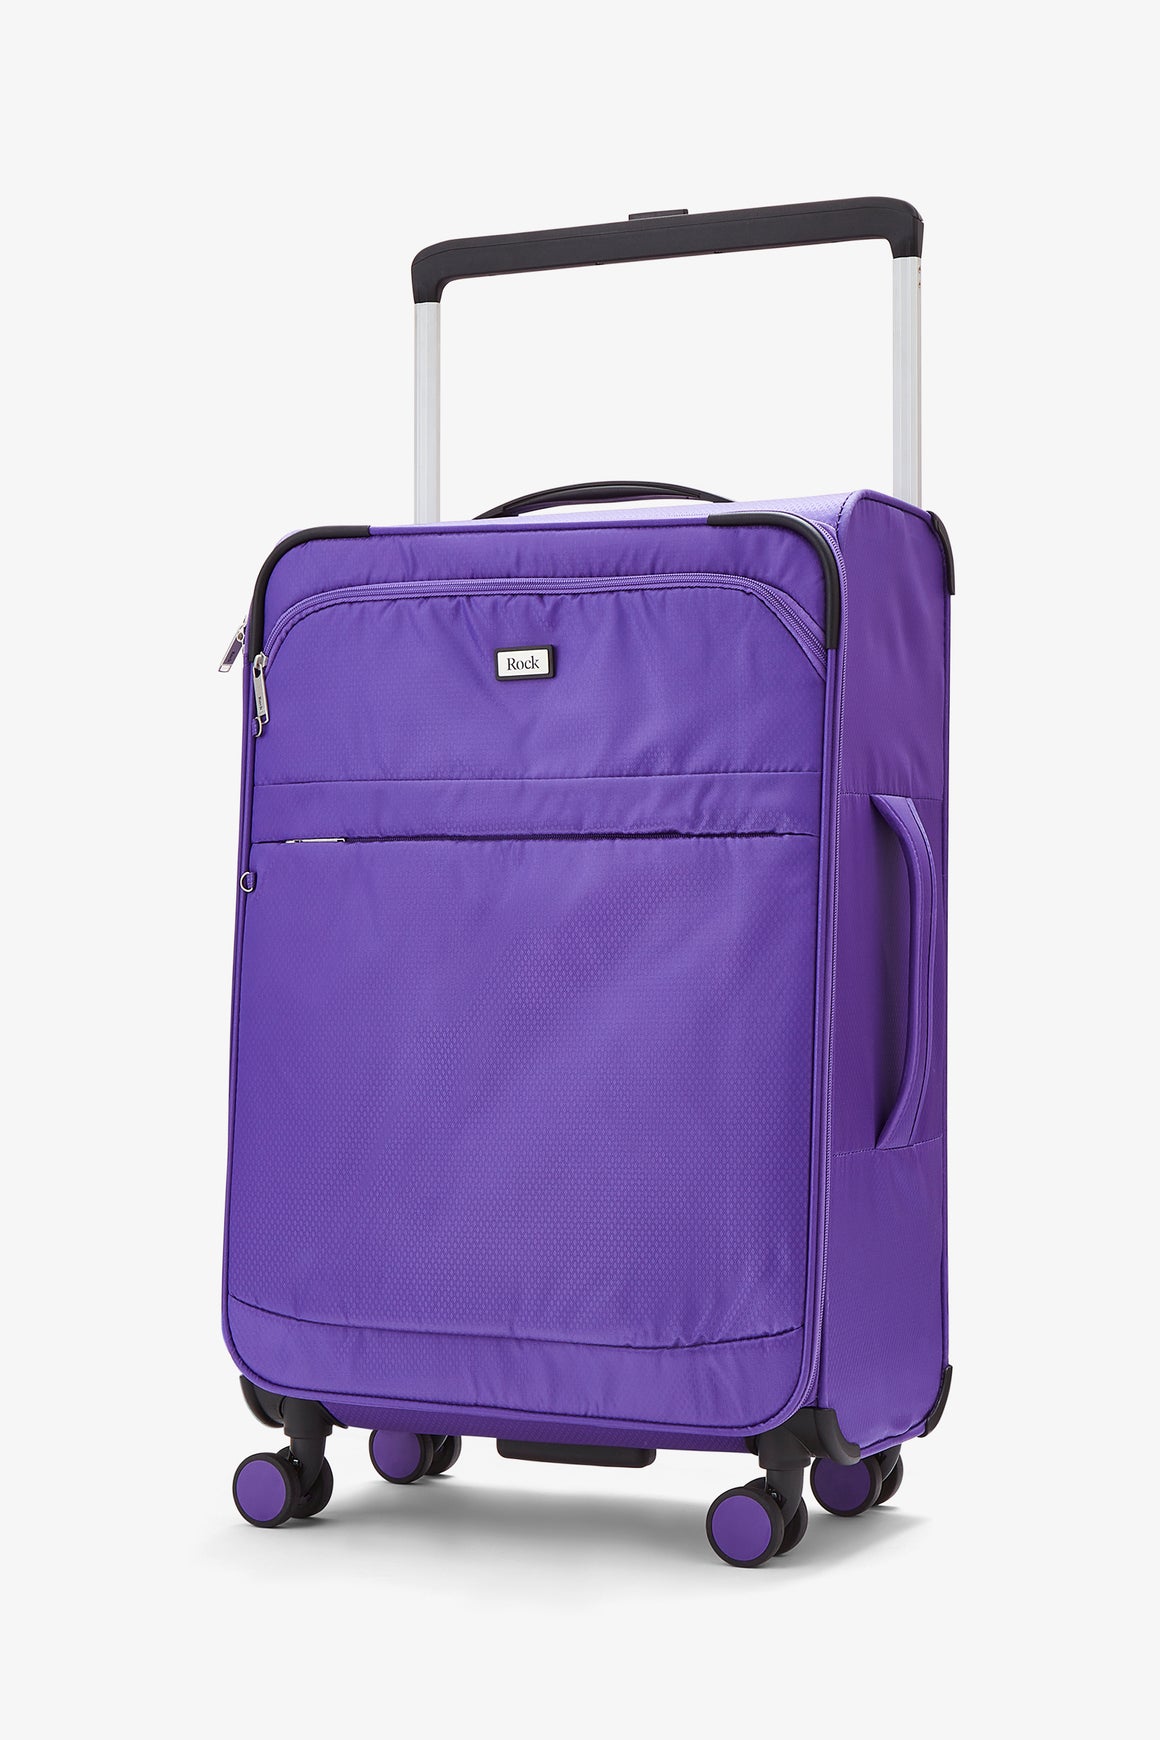 Rocklite Medium Suitcase in Purple